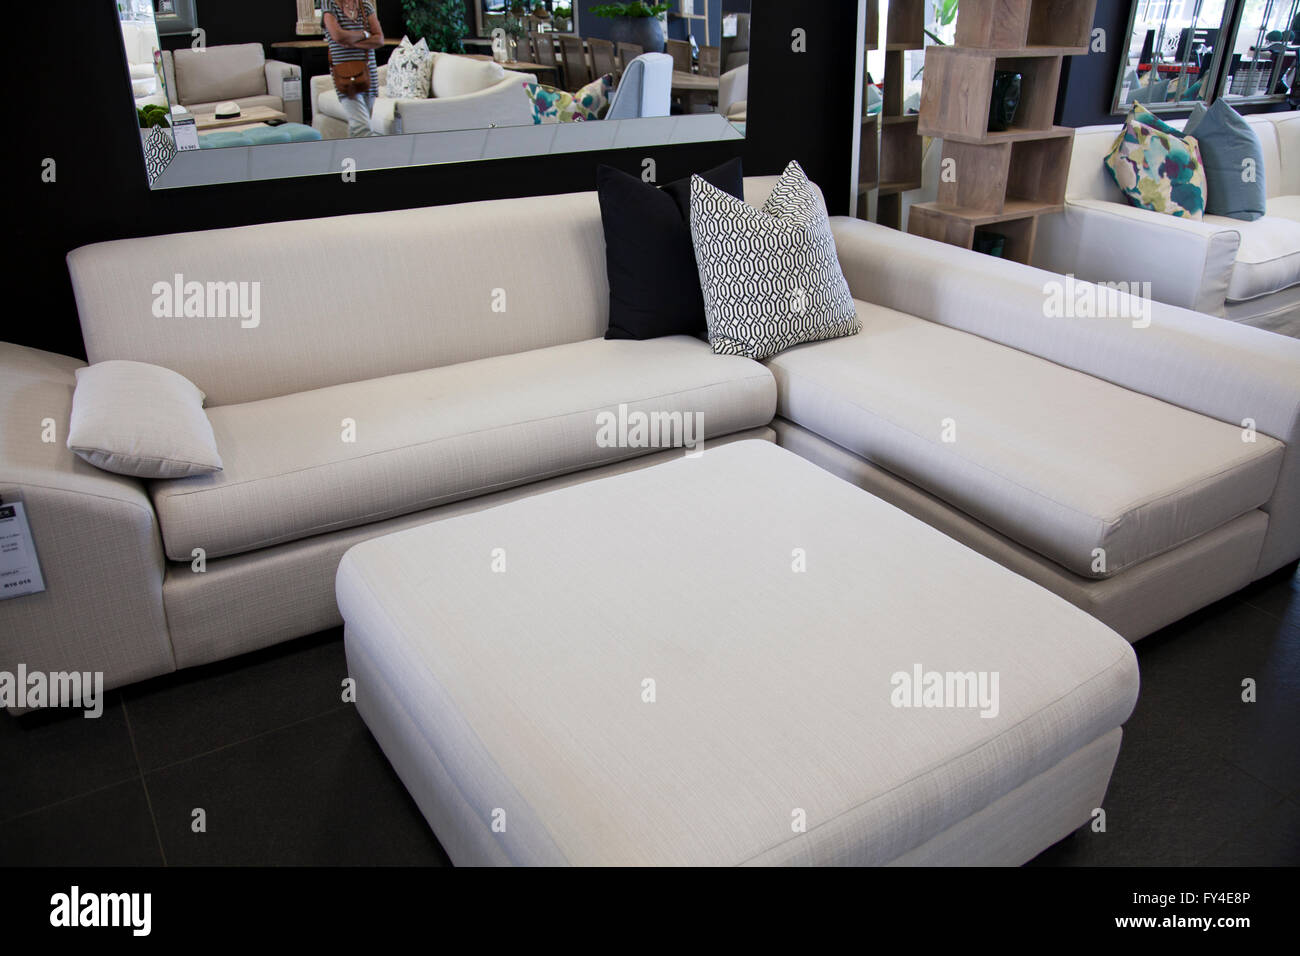 Sofas im Möbelgeschäft in Kapstadt - Südafrika Stockfotografie - Alamy